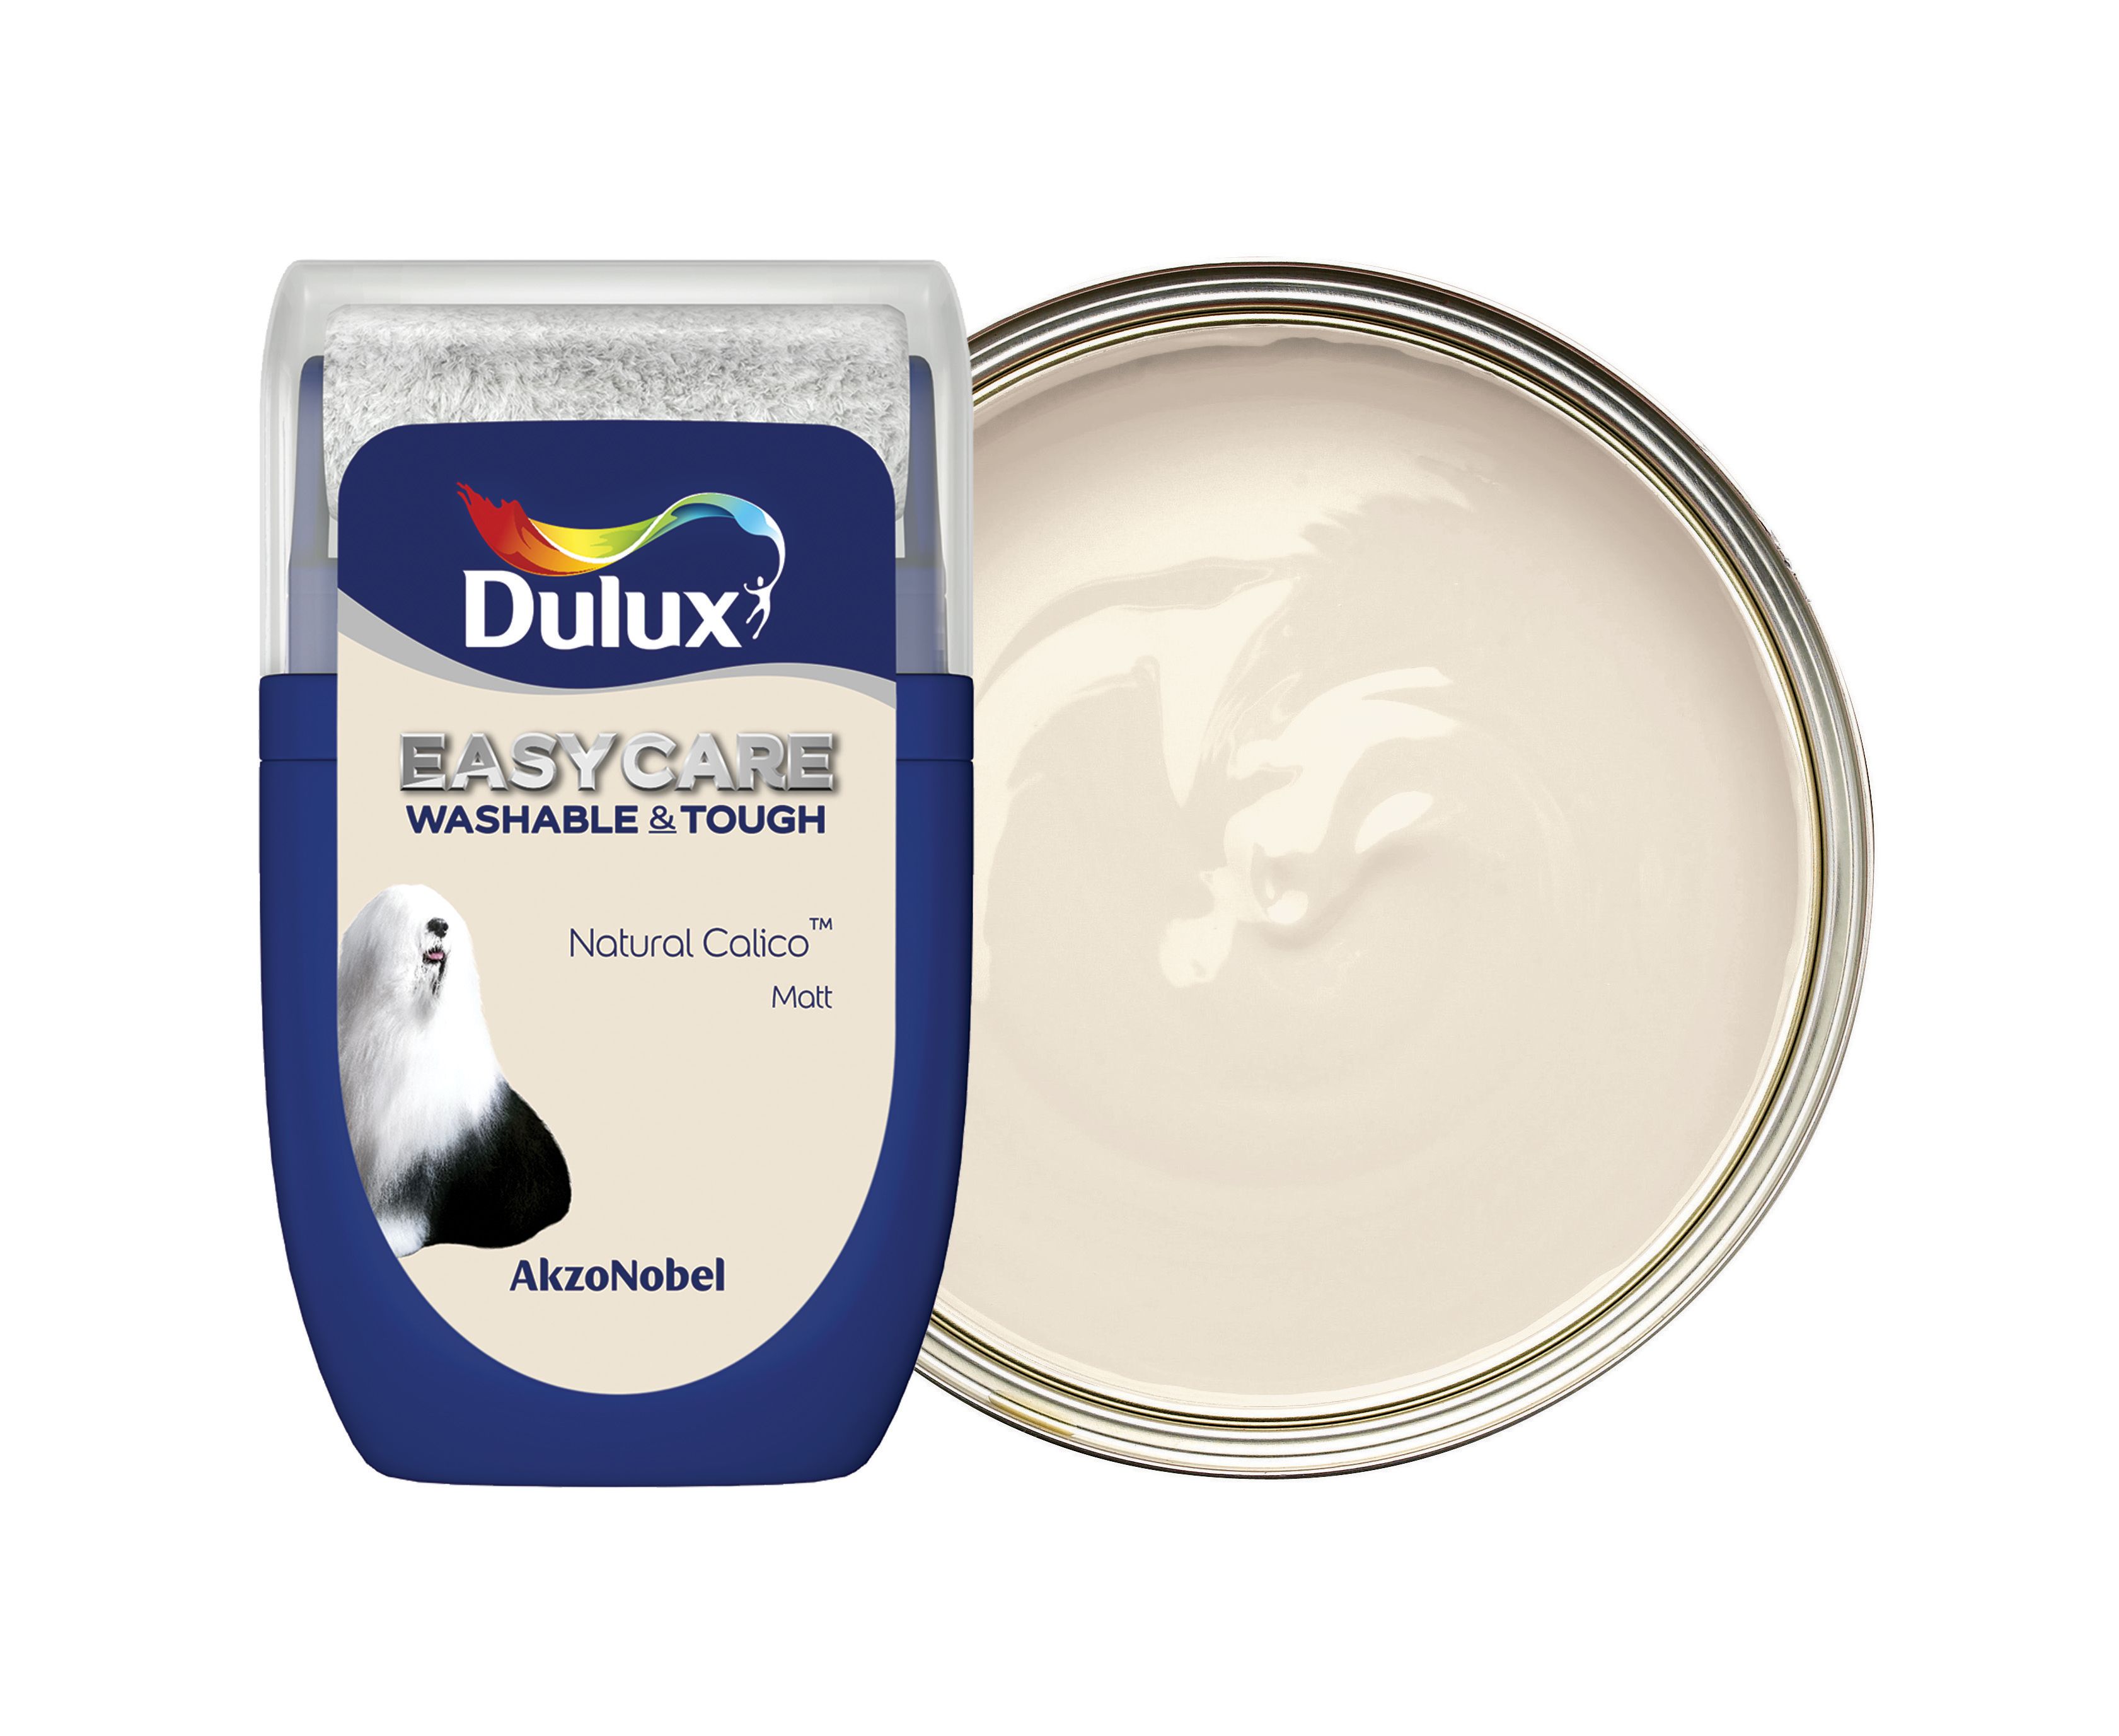 Dulux Easycare Washable & Tough Paint Tester Pot - Natural Calico - 30ml